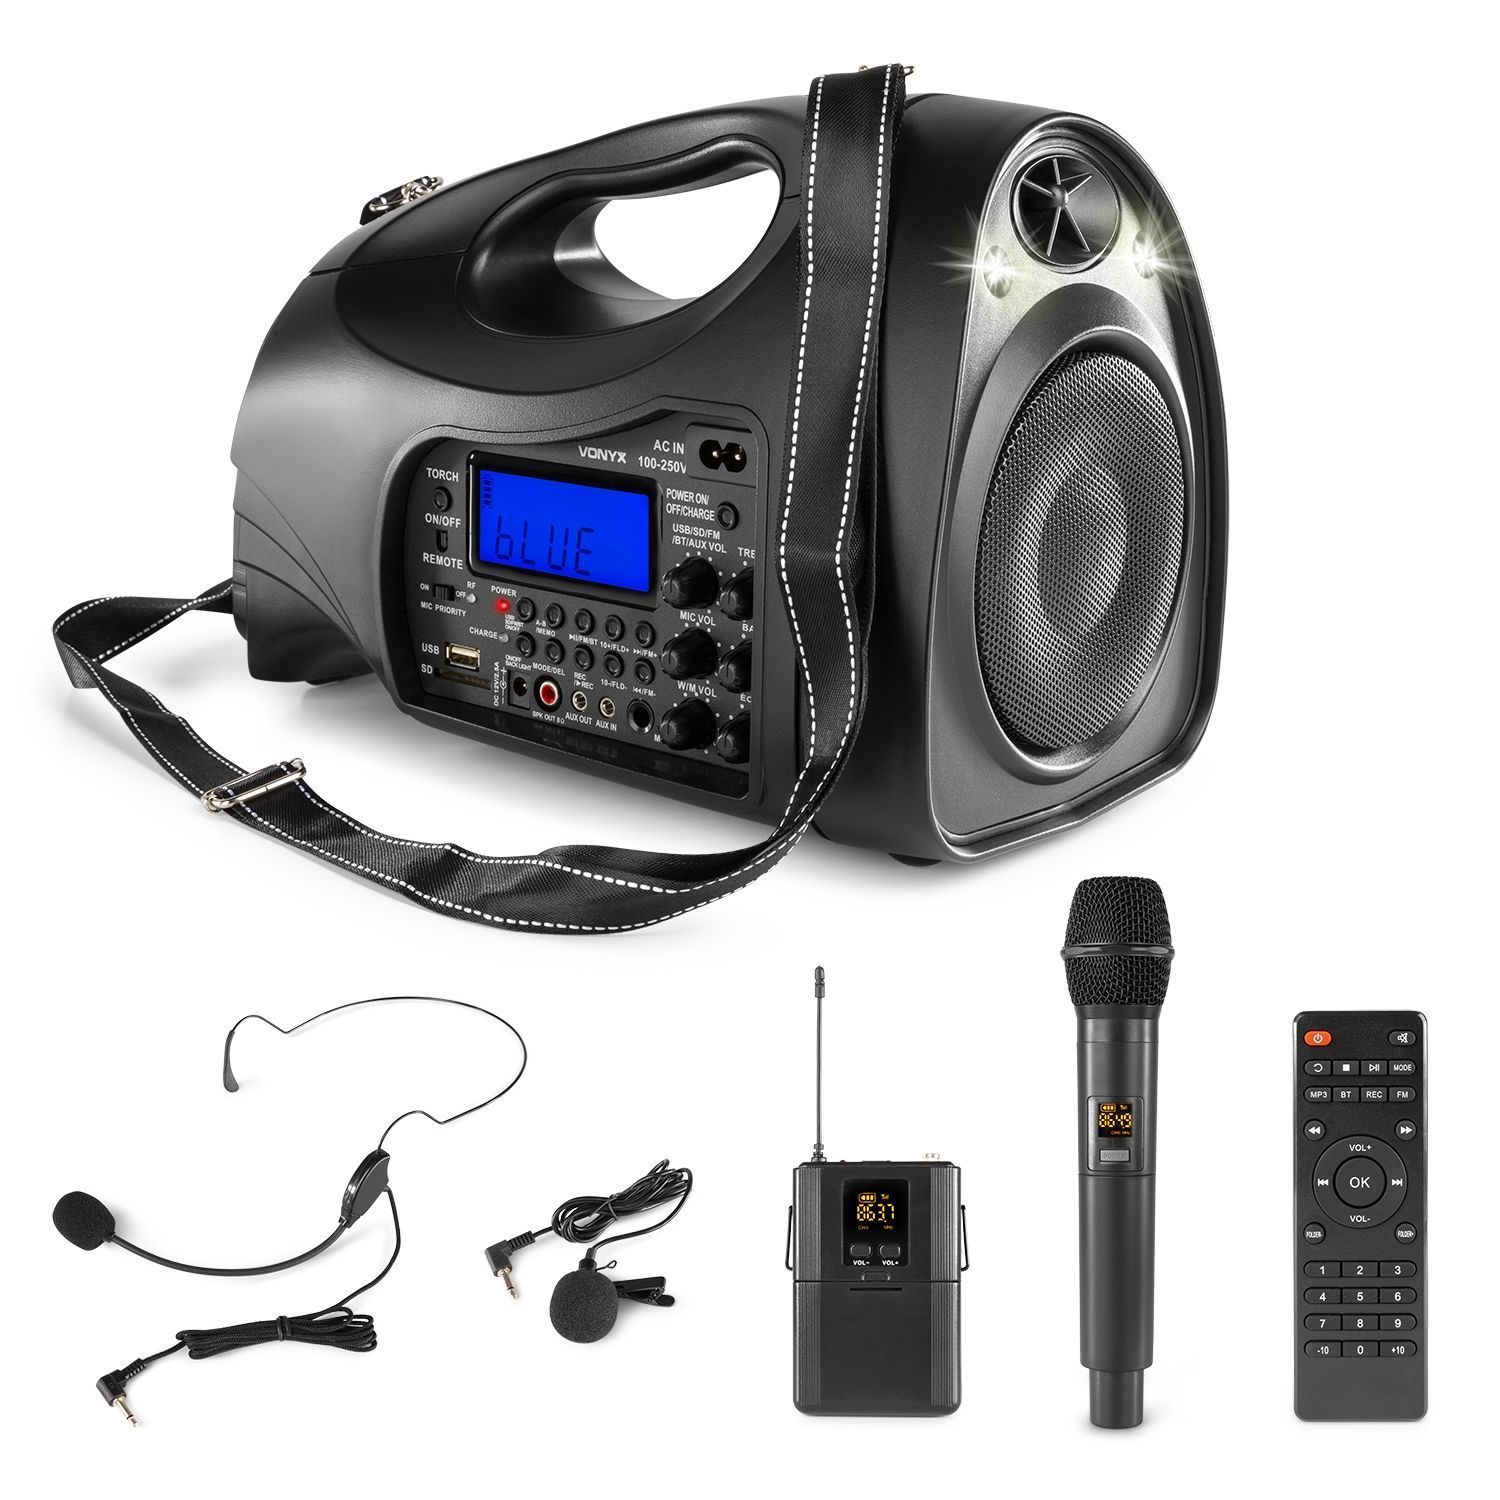 Vonyx ST016 draagbare speaker met Bluetooth, mp3 en microfoons - 130W